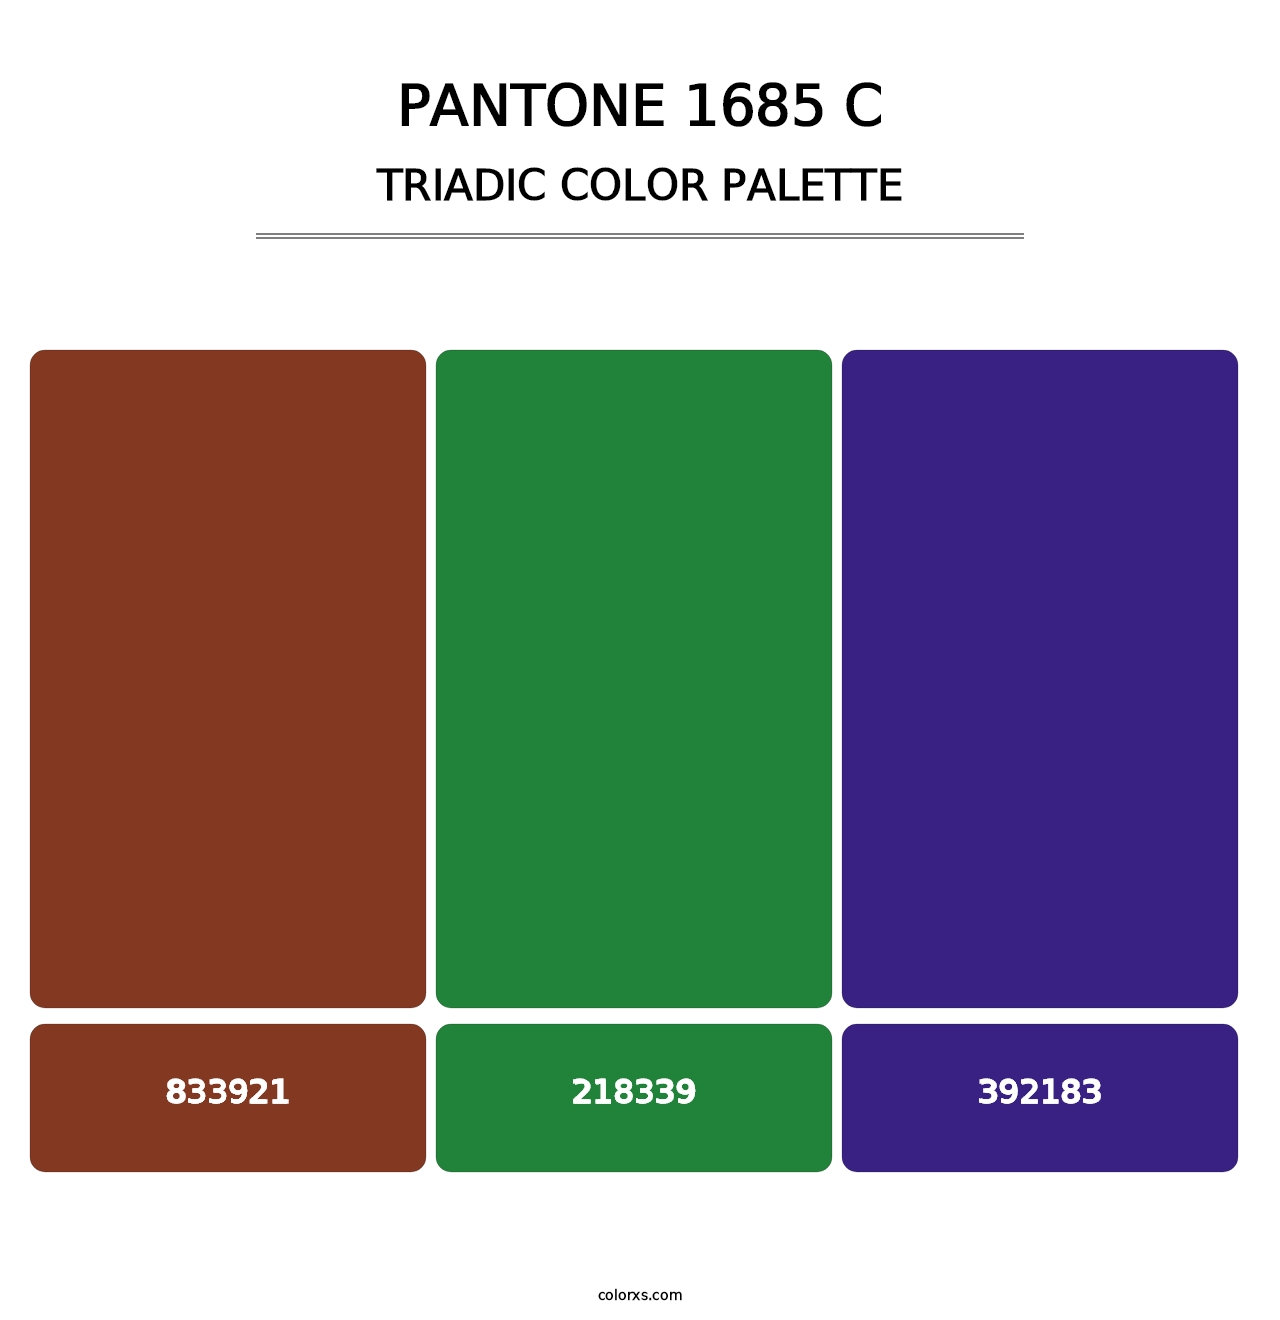 PANTONE 1685 C - Triadic Color Palette